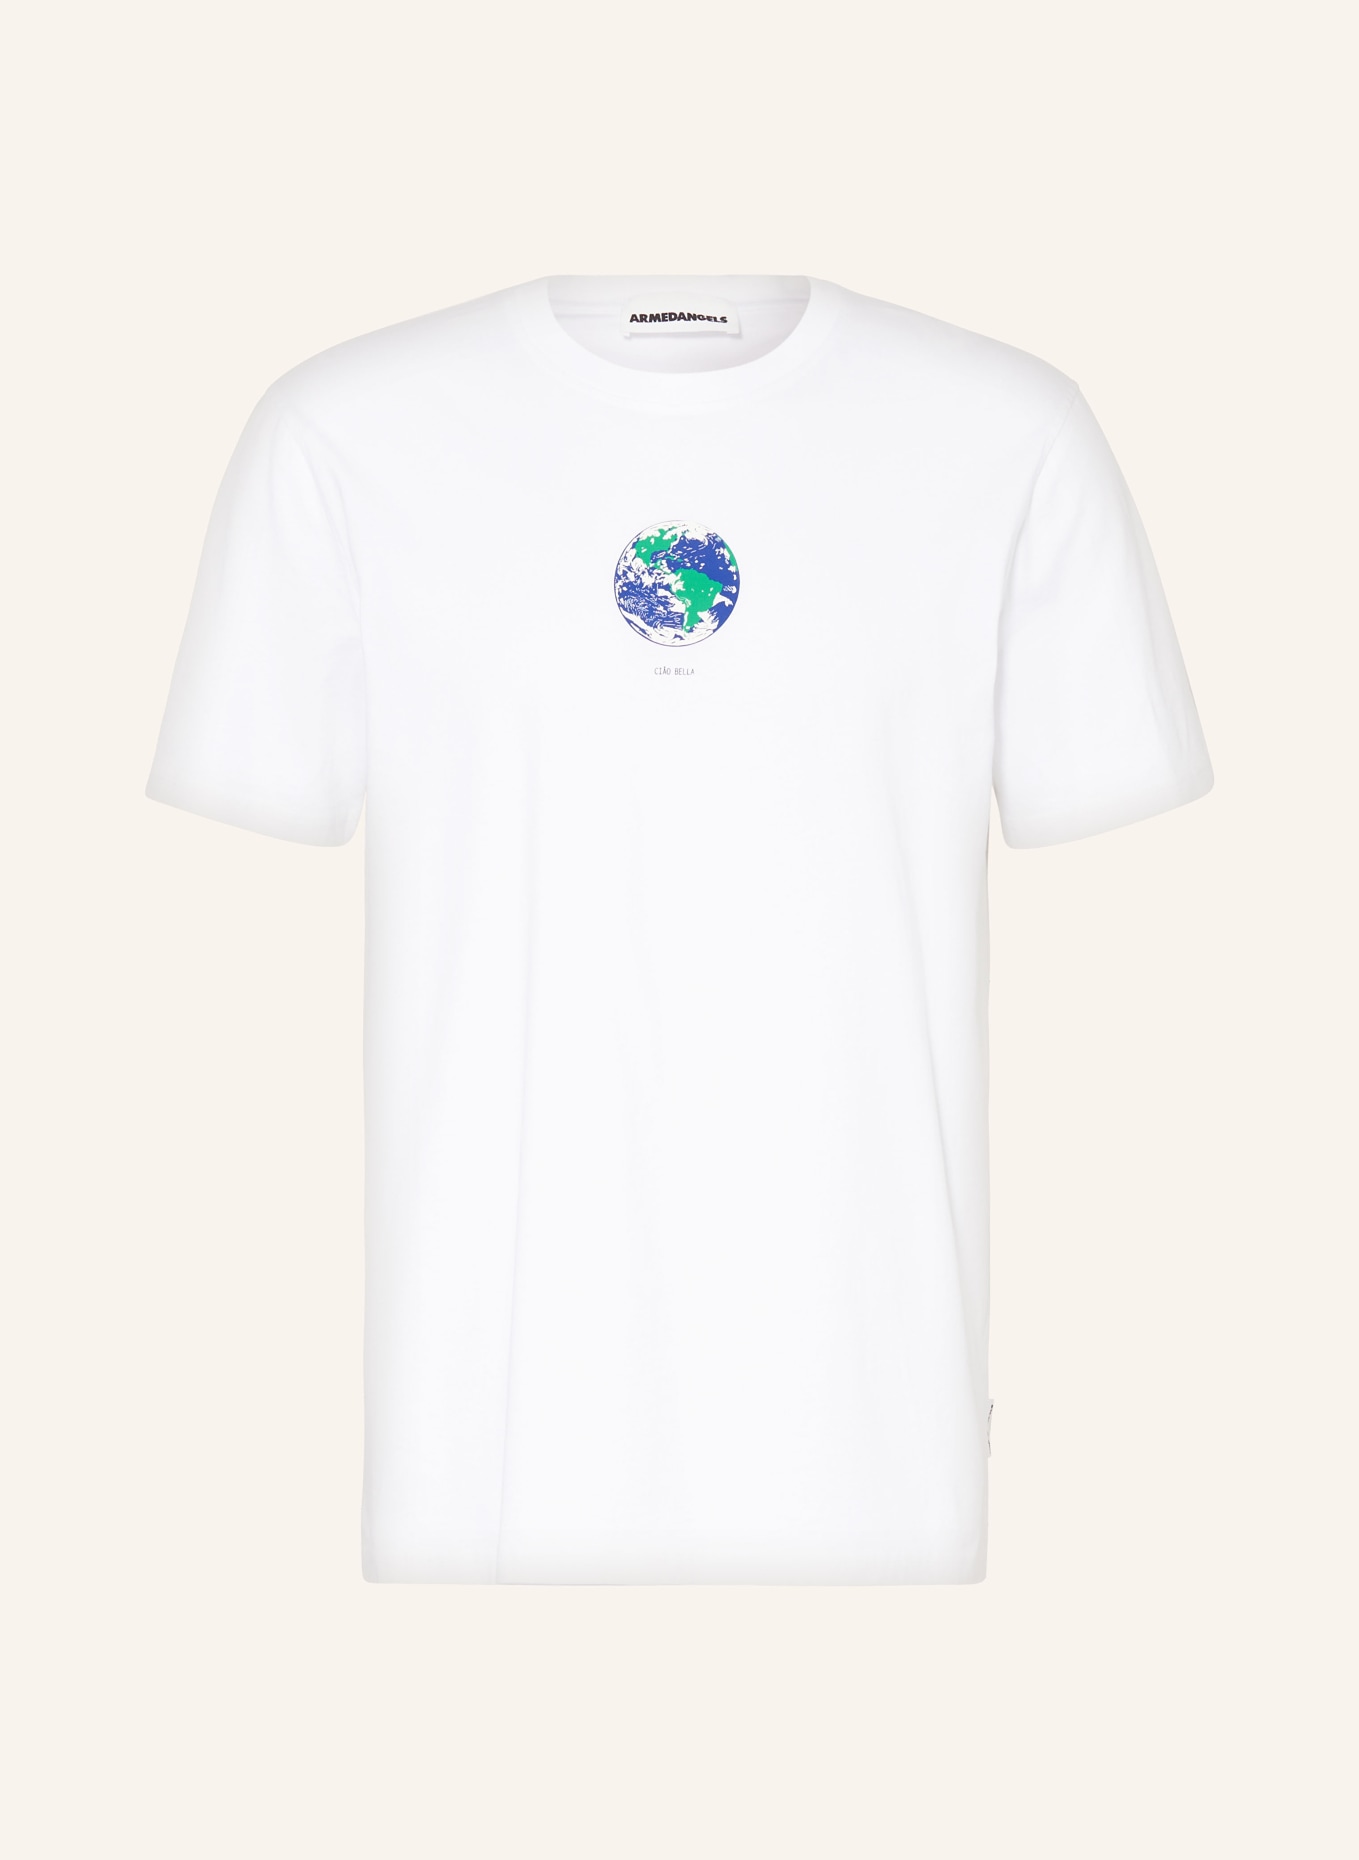 ARMEDANGELS T-shirt AADONI BELLAA, Color: WHITE (Image 1)